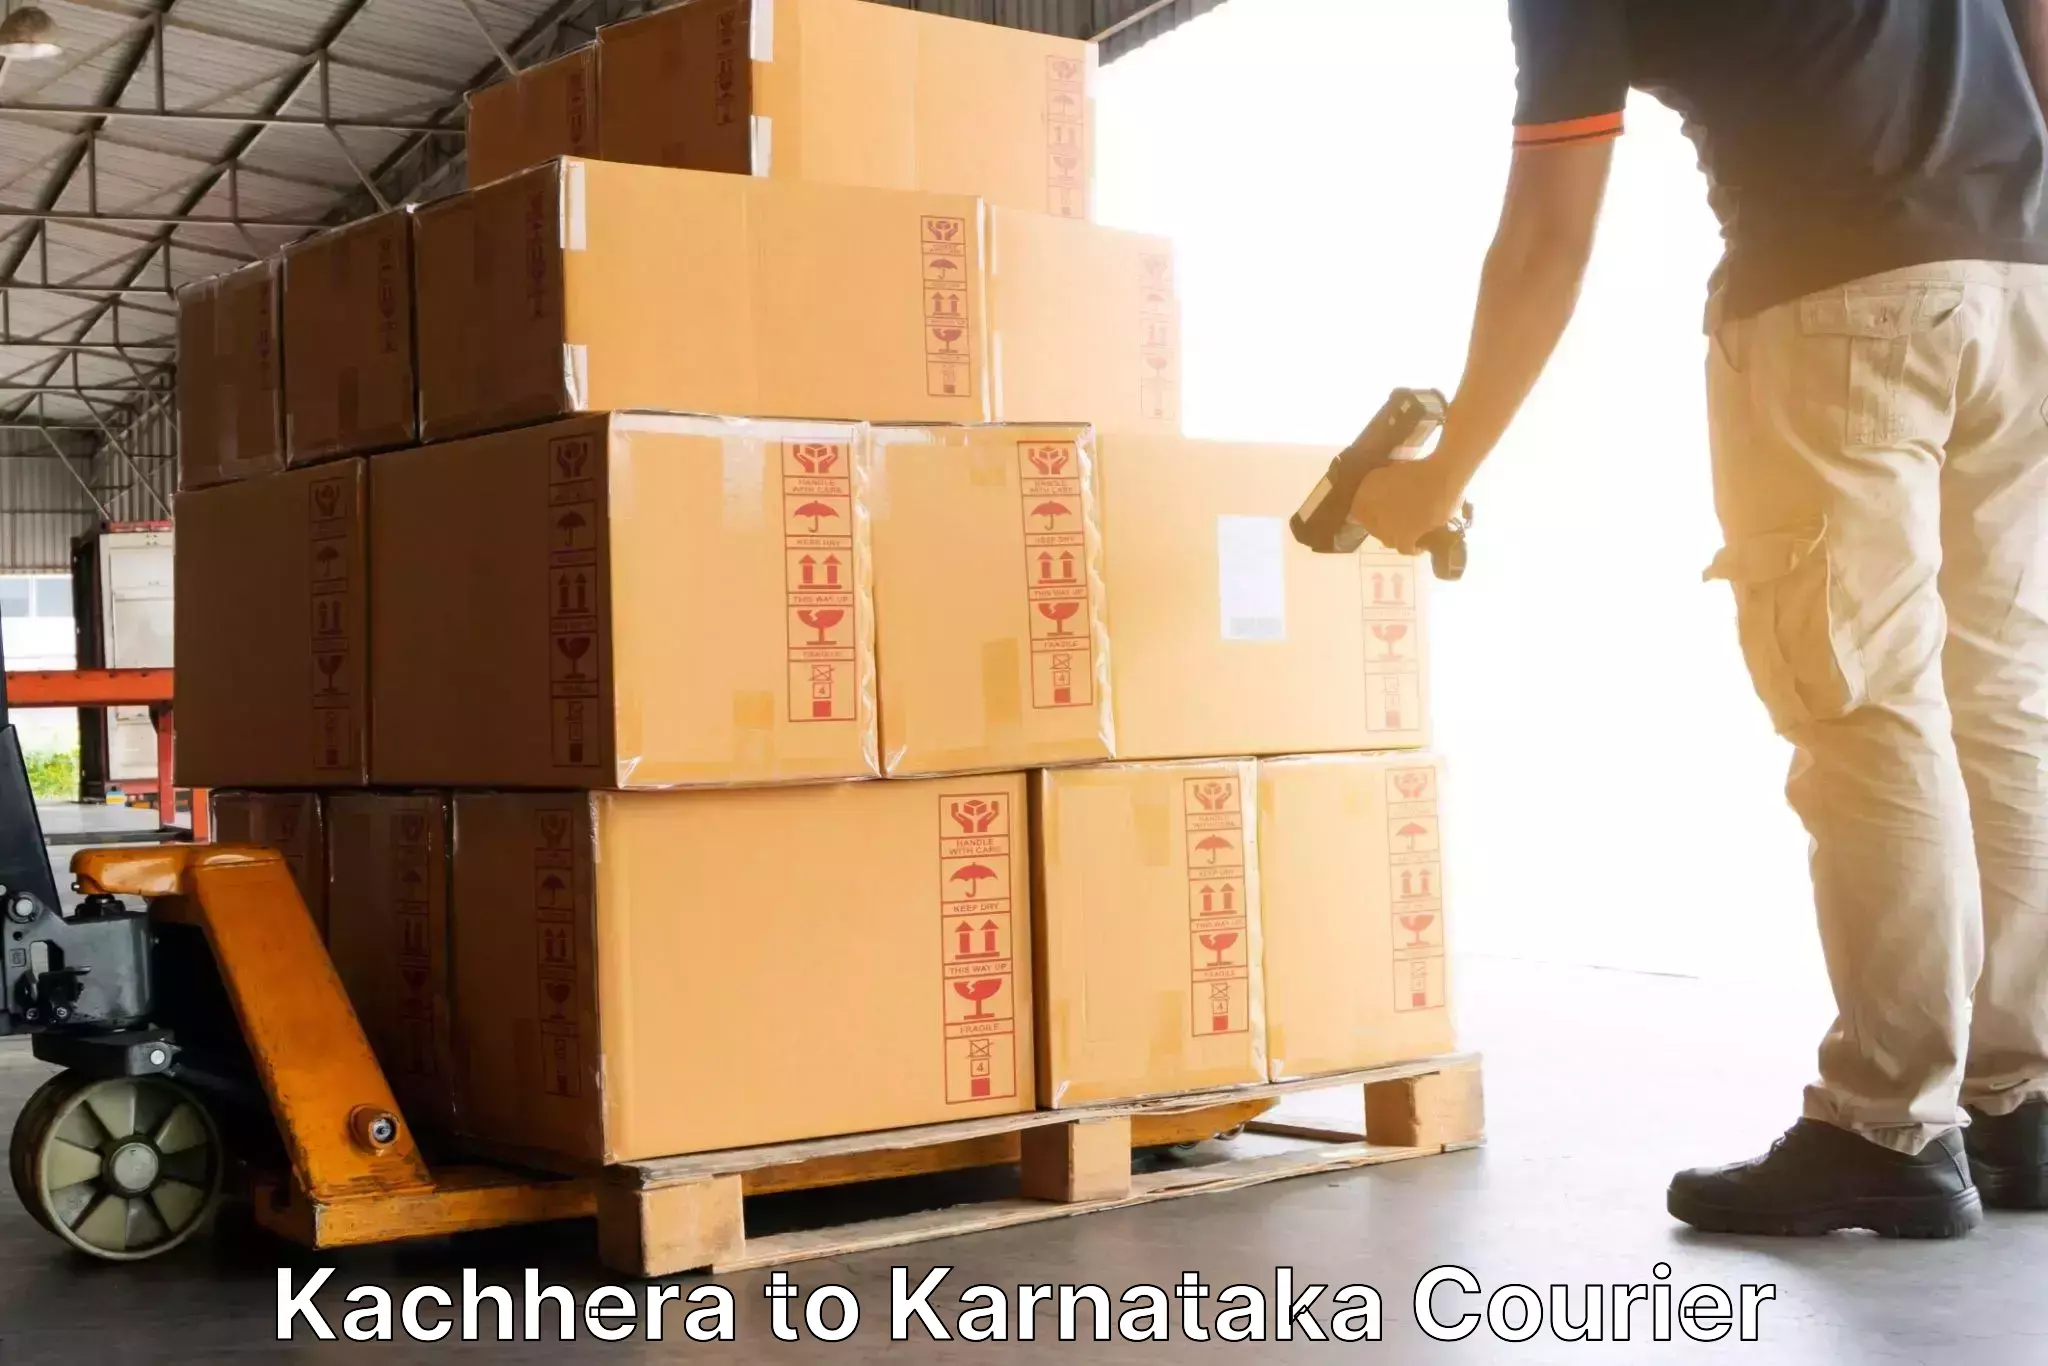 Premium delivery services Kachhera to Deodurga